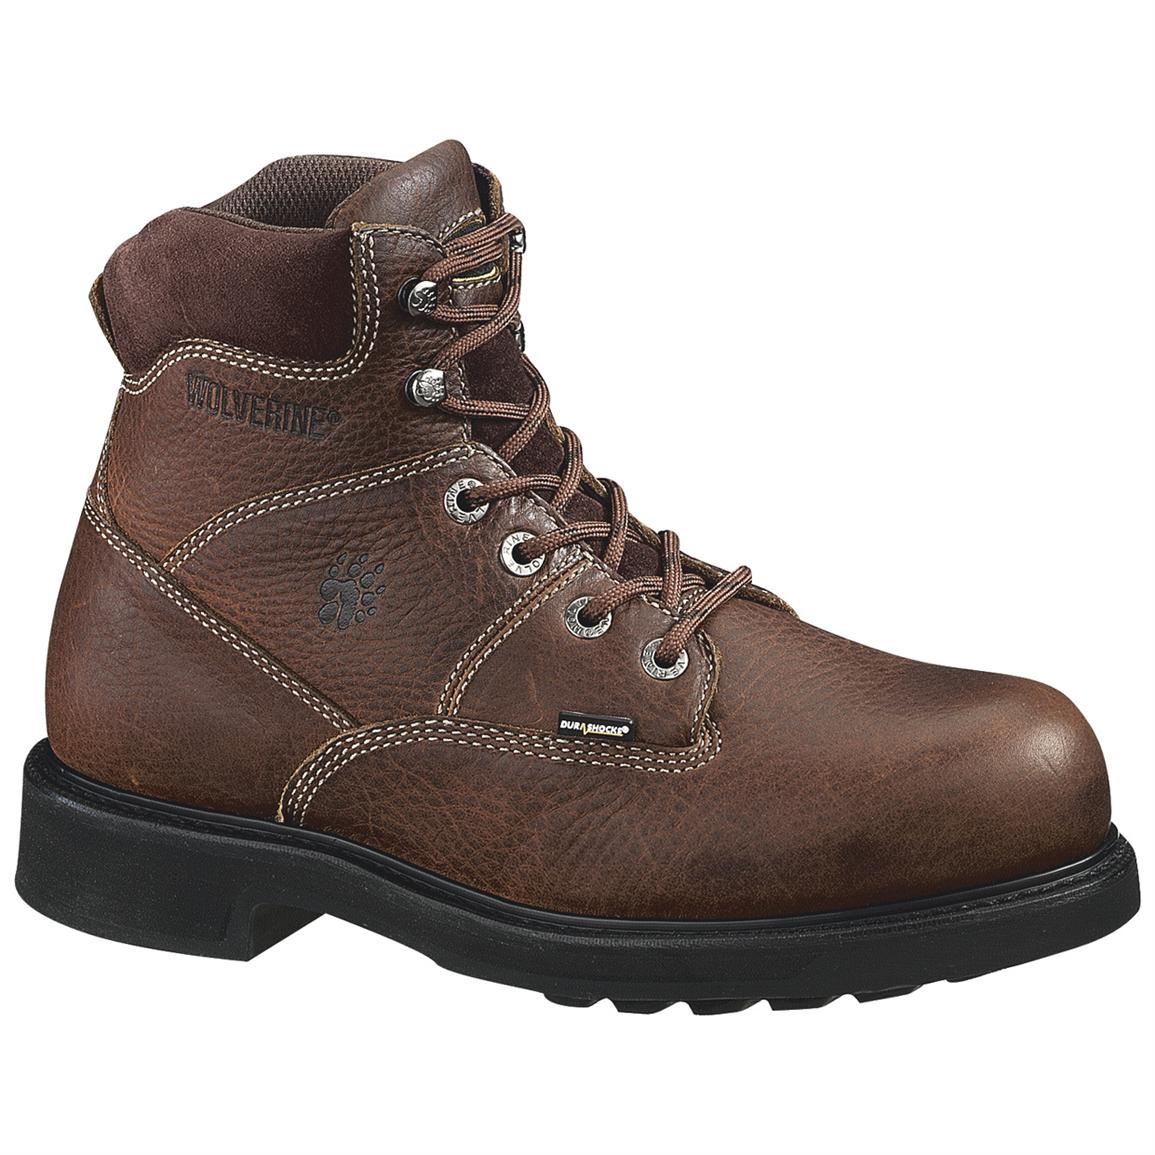 Wolverine Men's 6" Tremor DuraShock Boots, Brown - 146244 ...